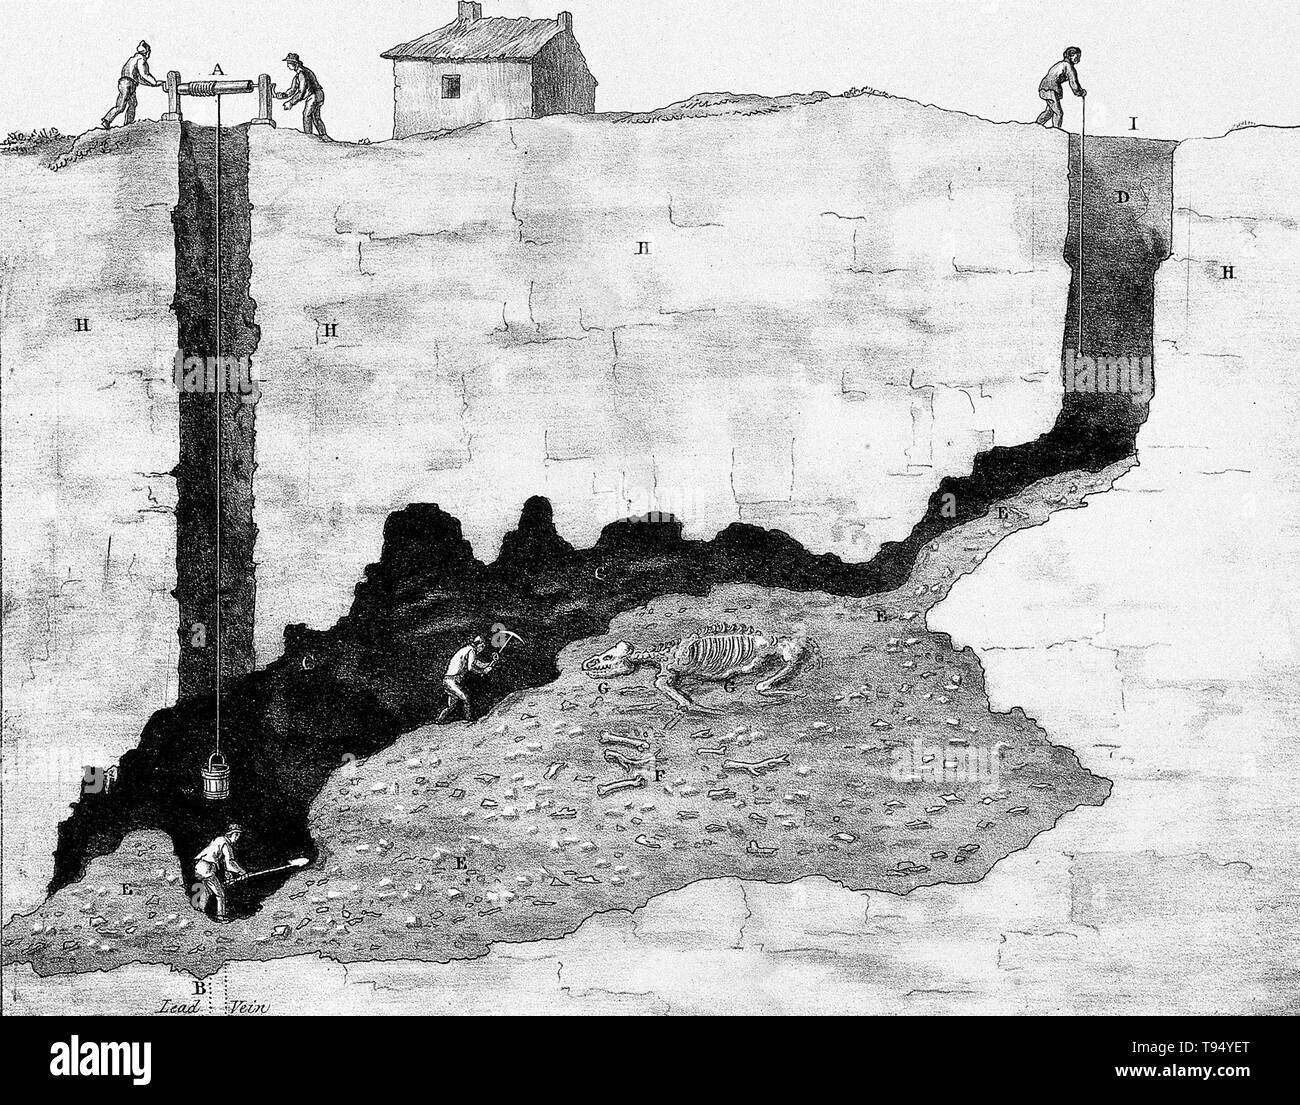 Querschnitt einer Mine in Derbyshire, die Bergleute auf ein Tier fossilen arbeiten. Lithographie, 19. Jahrhundert, von Thomas Webster nach einer Skizze von Professor Buckland. Stockfoto